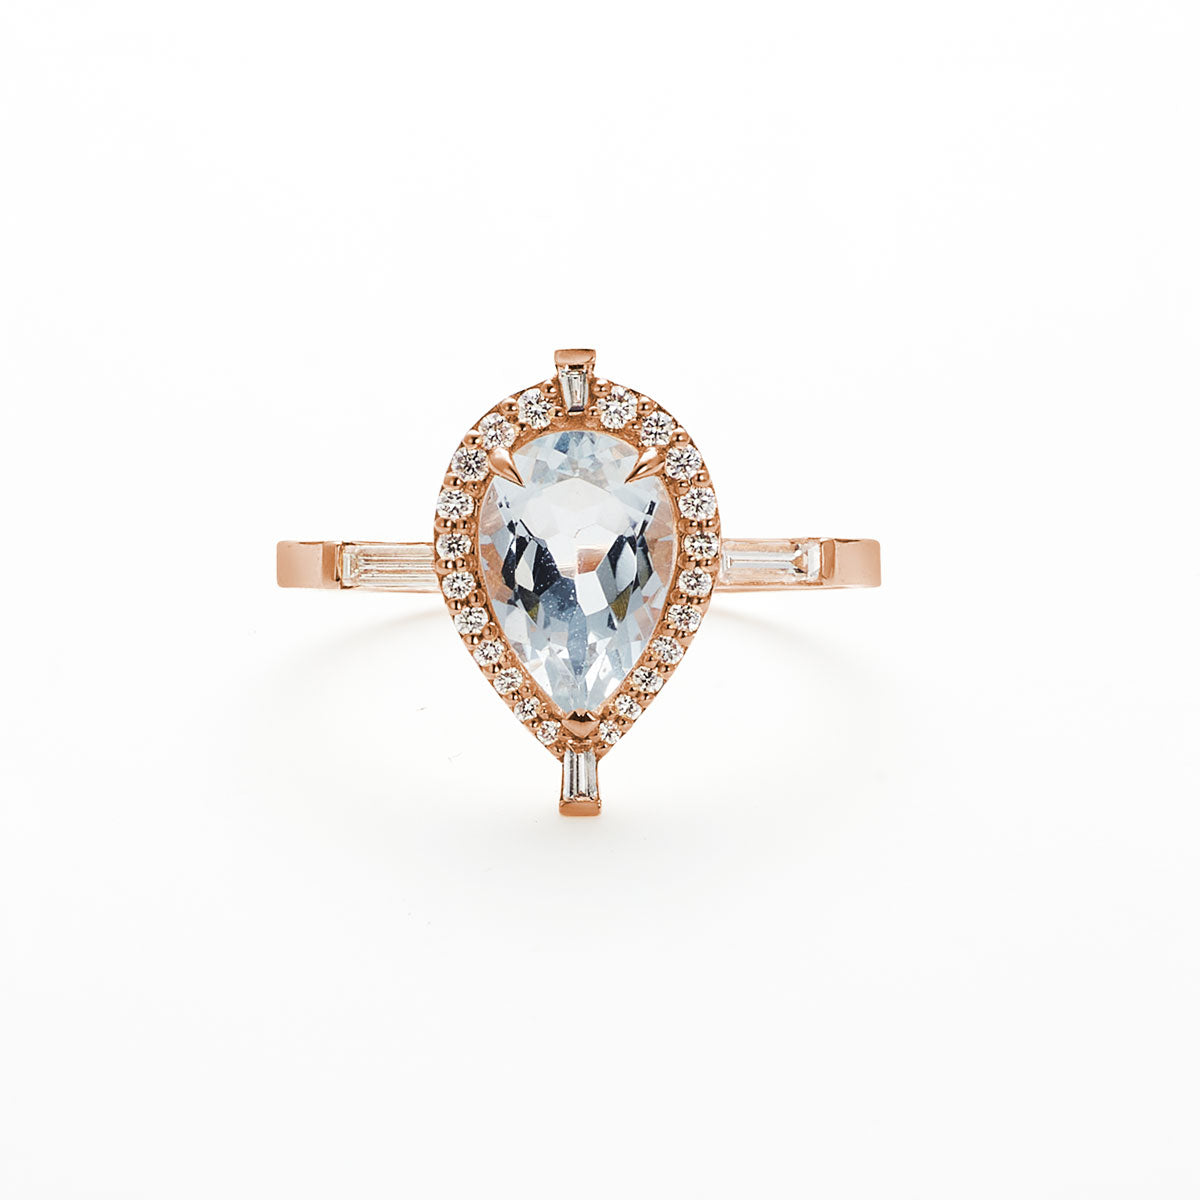 Pear shaped aquamarine diamond Marchesa ring on white background.